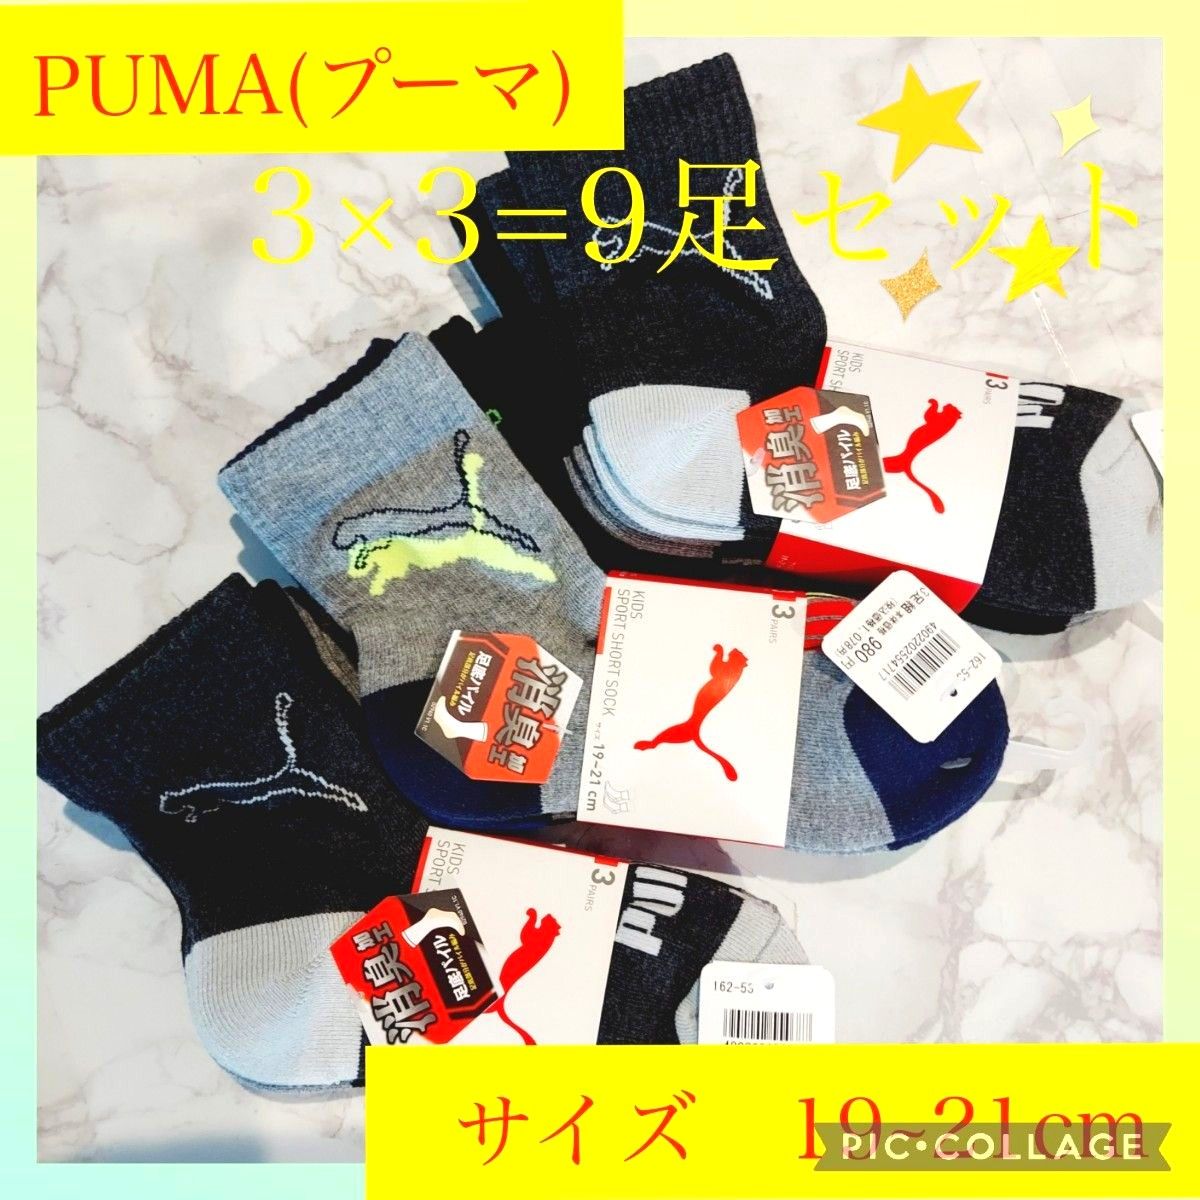 【新品未使用】 プーマ PUMA　靴下　3×3=9足セット　サイズ 19~21cm　色:2足は同じ色の組合、1足は柄違い　限定1品